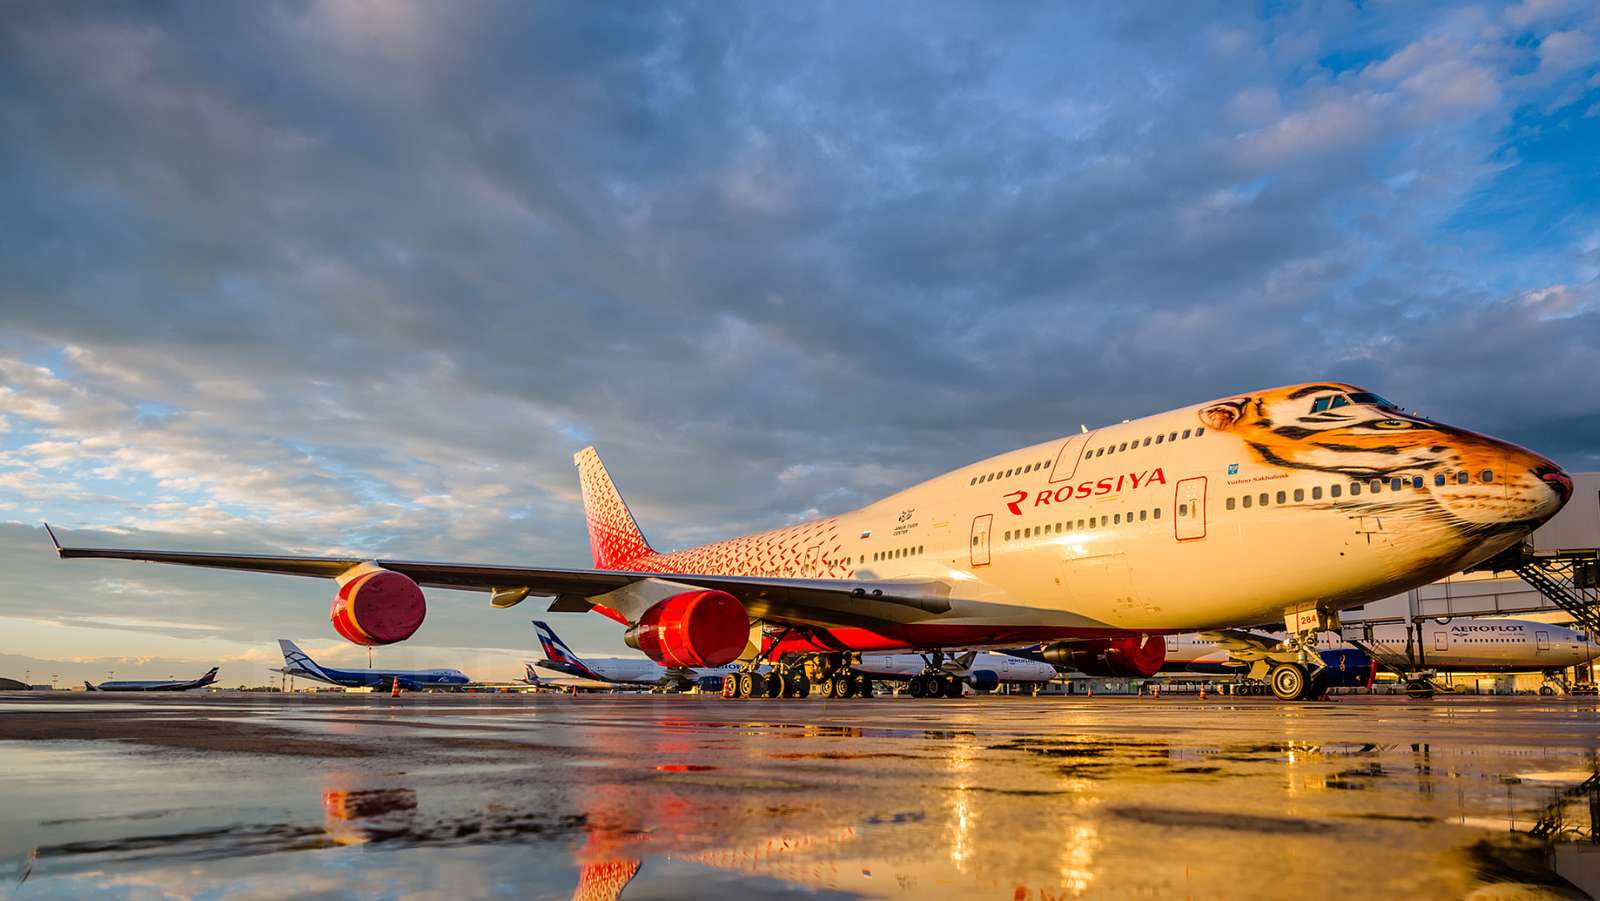 Самолет Qantas пазл онлайн из фото